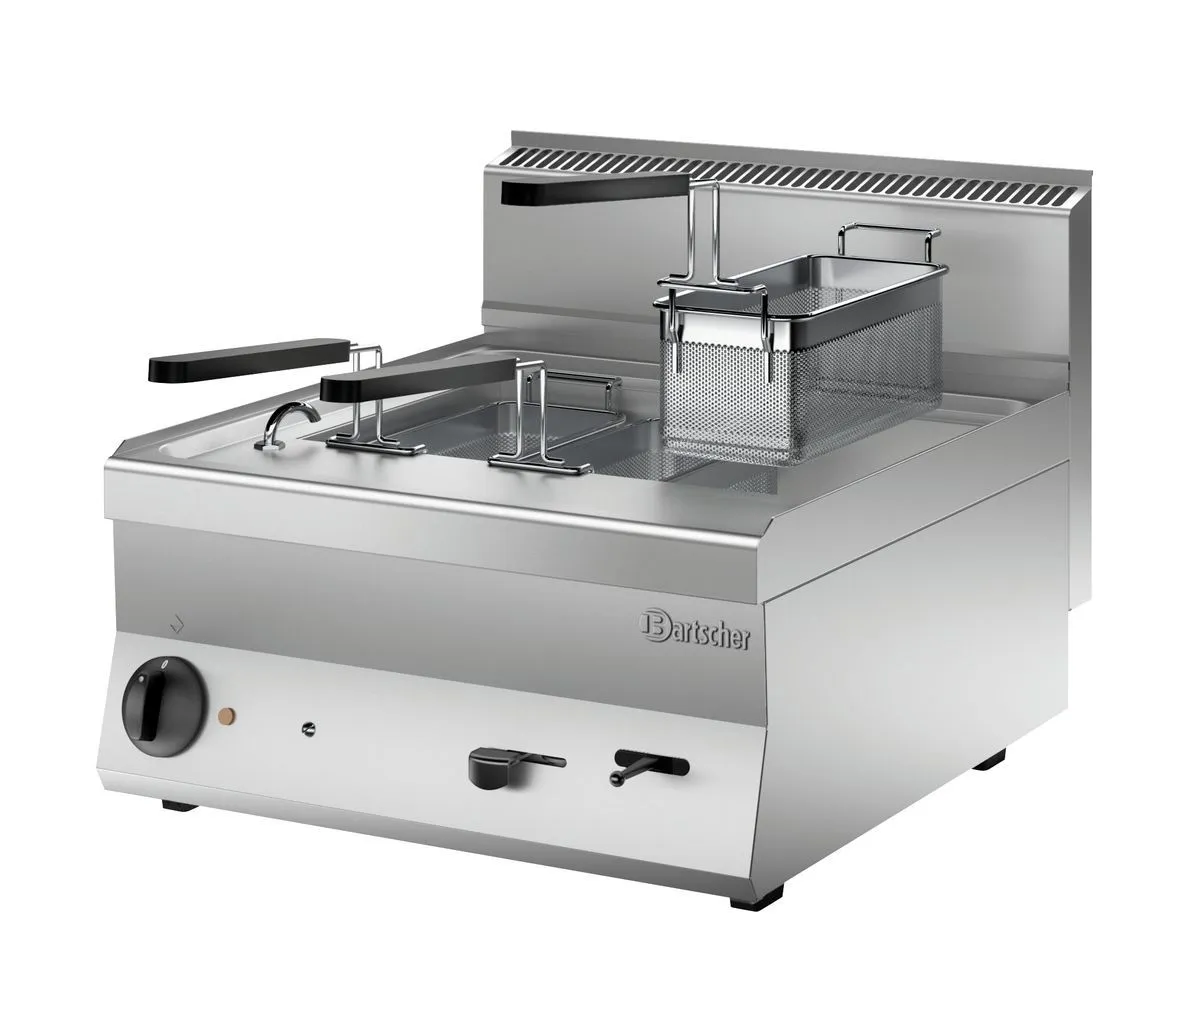 Bartscher Pasta cooker 650, B600, 28L, 3K Countertop